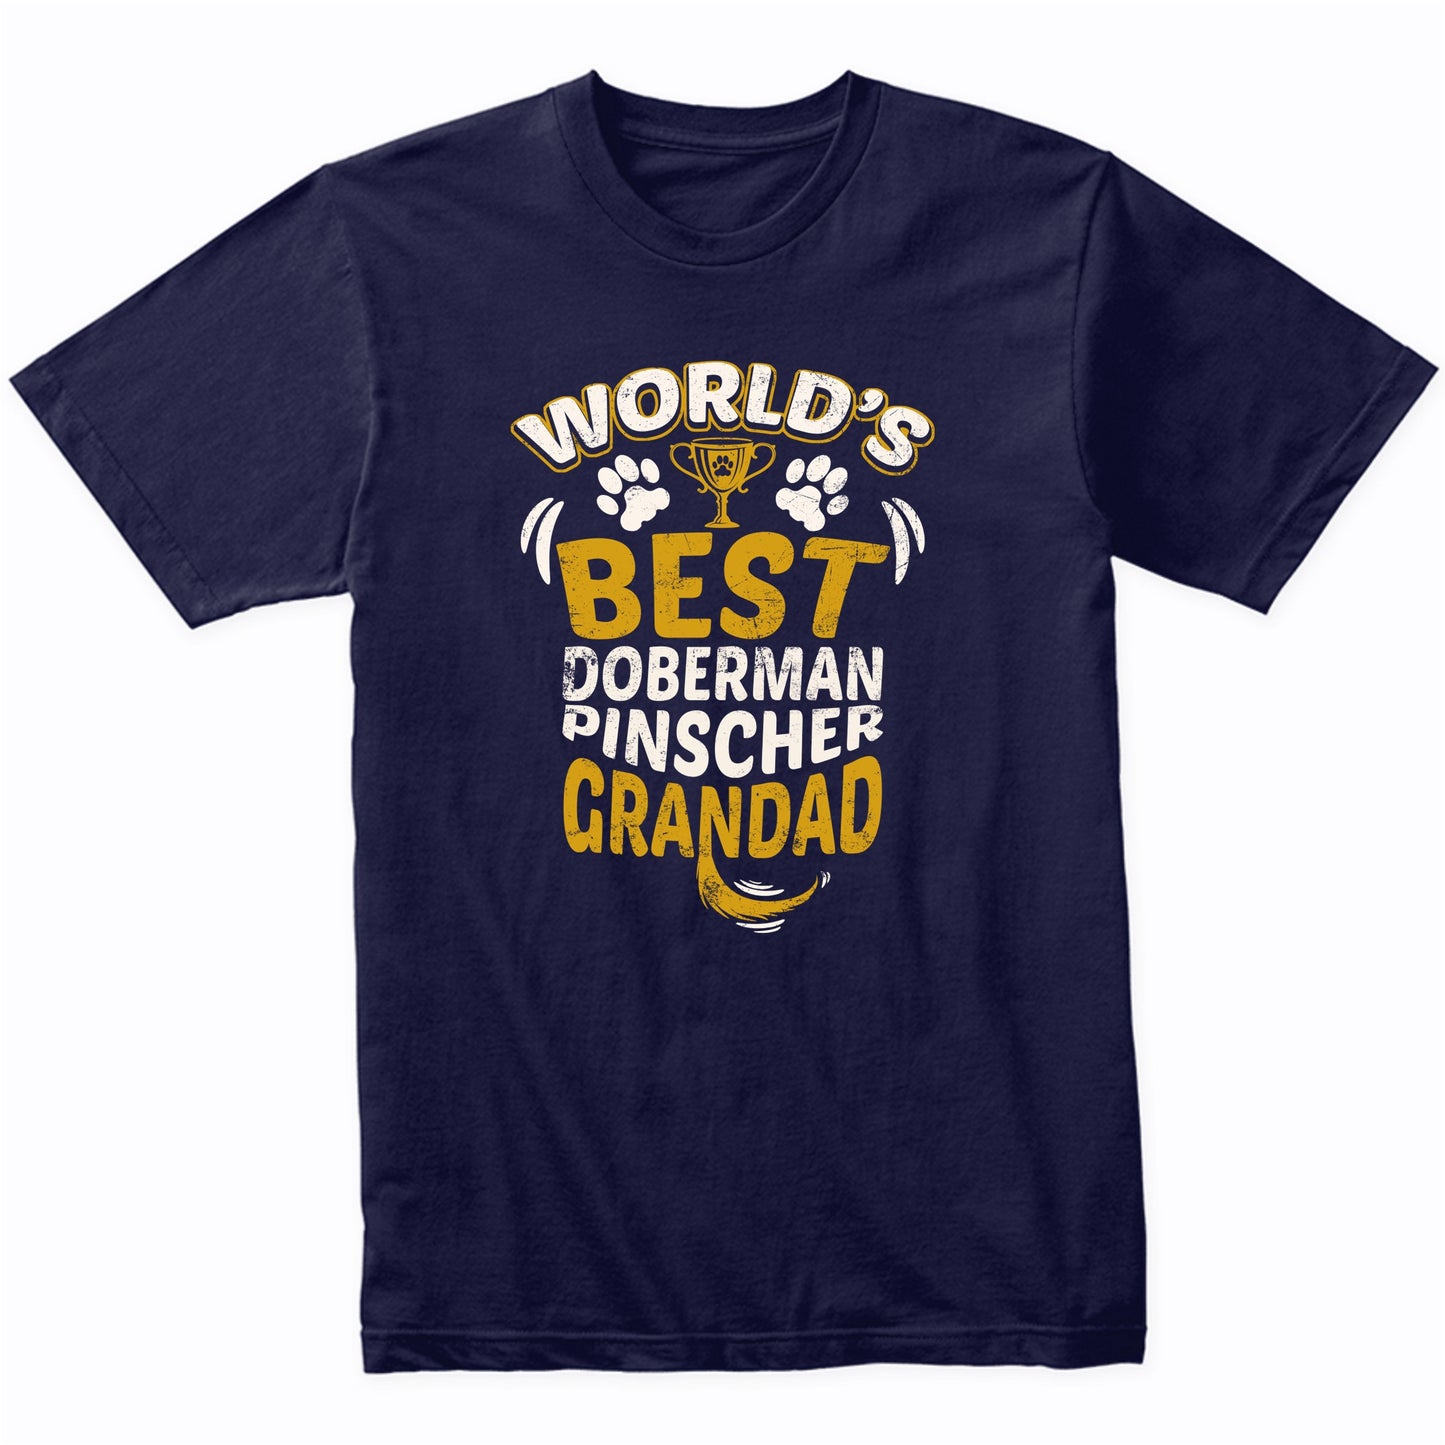 World's Best Doberman Pinscher Grandad Graphic T-Shirt